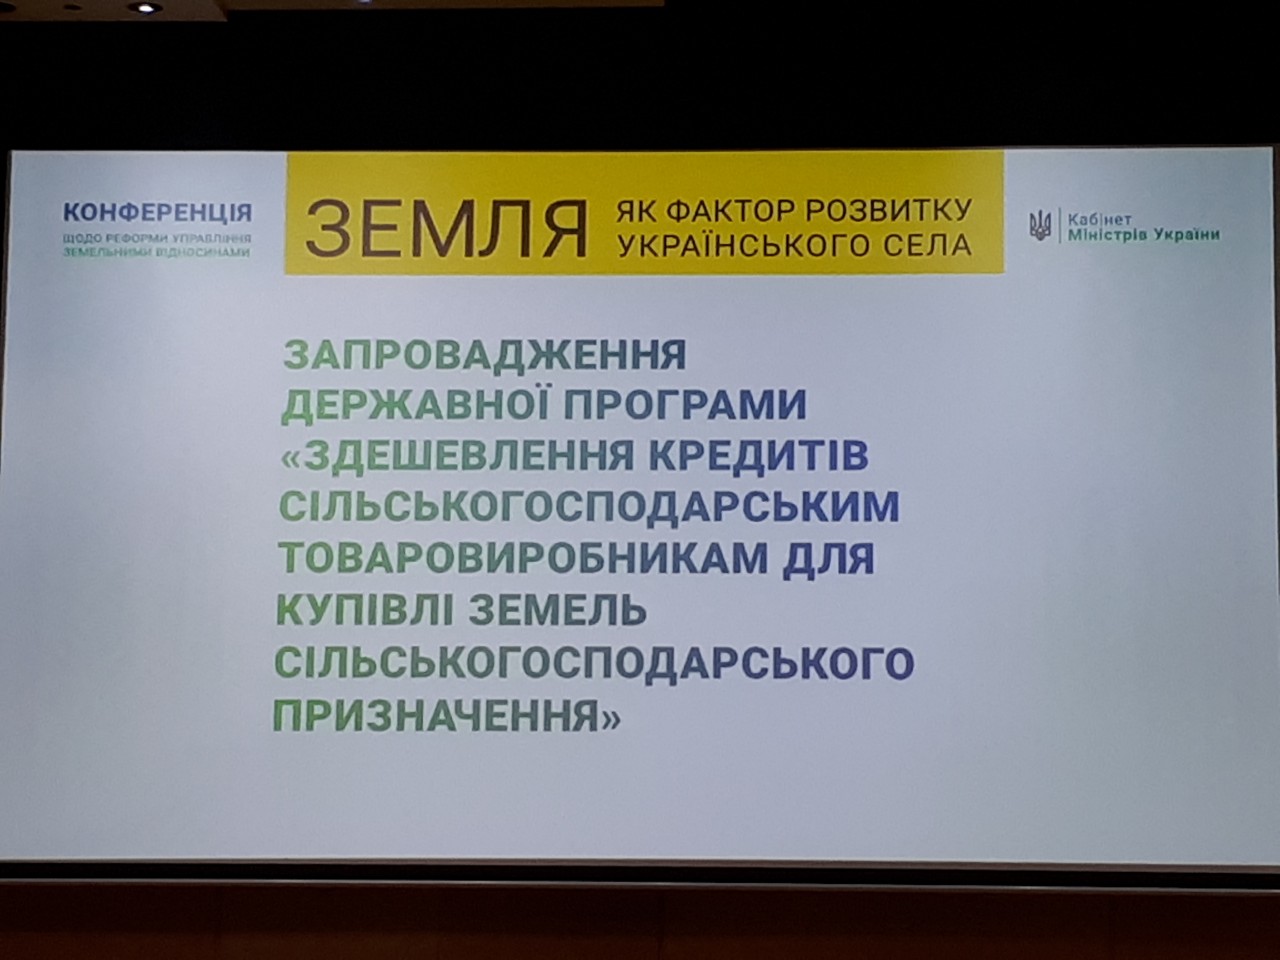 Додатково конференція щодо реформи управління земельними відносинами «Земля як фактор розвитку українського села» 7